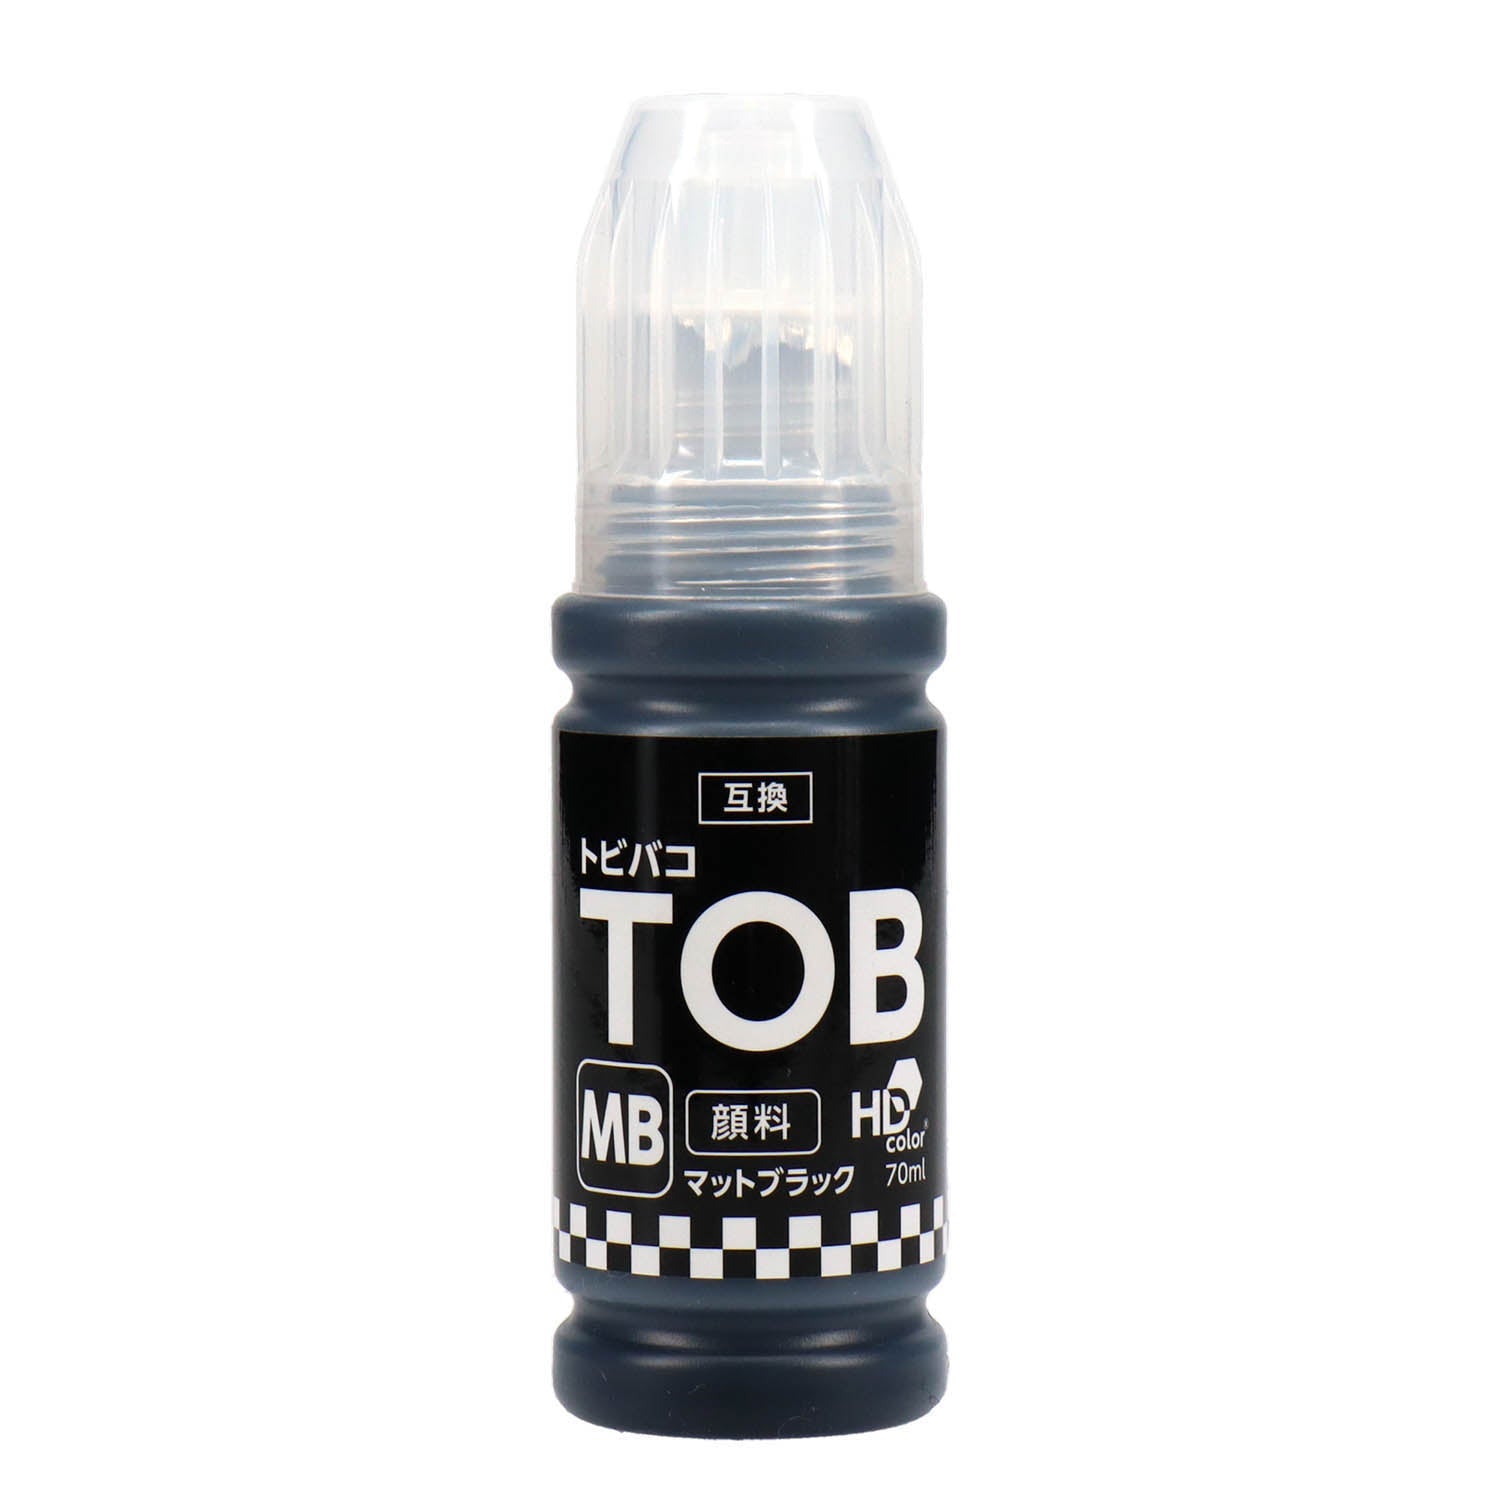 純正品エプソン インクボトル (トビバコ) TOB 5色セット (TOB-PB MB C M Y) - 5